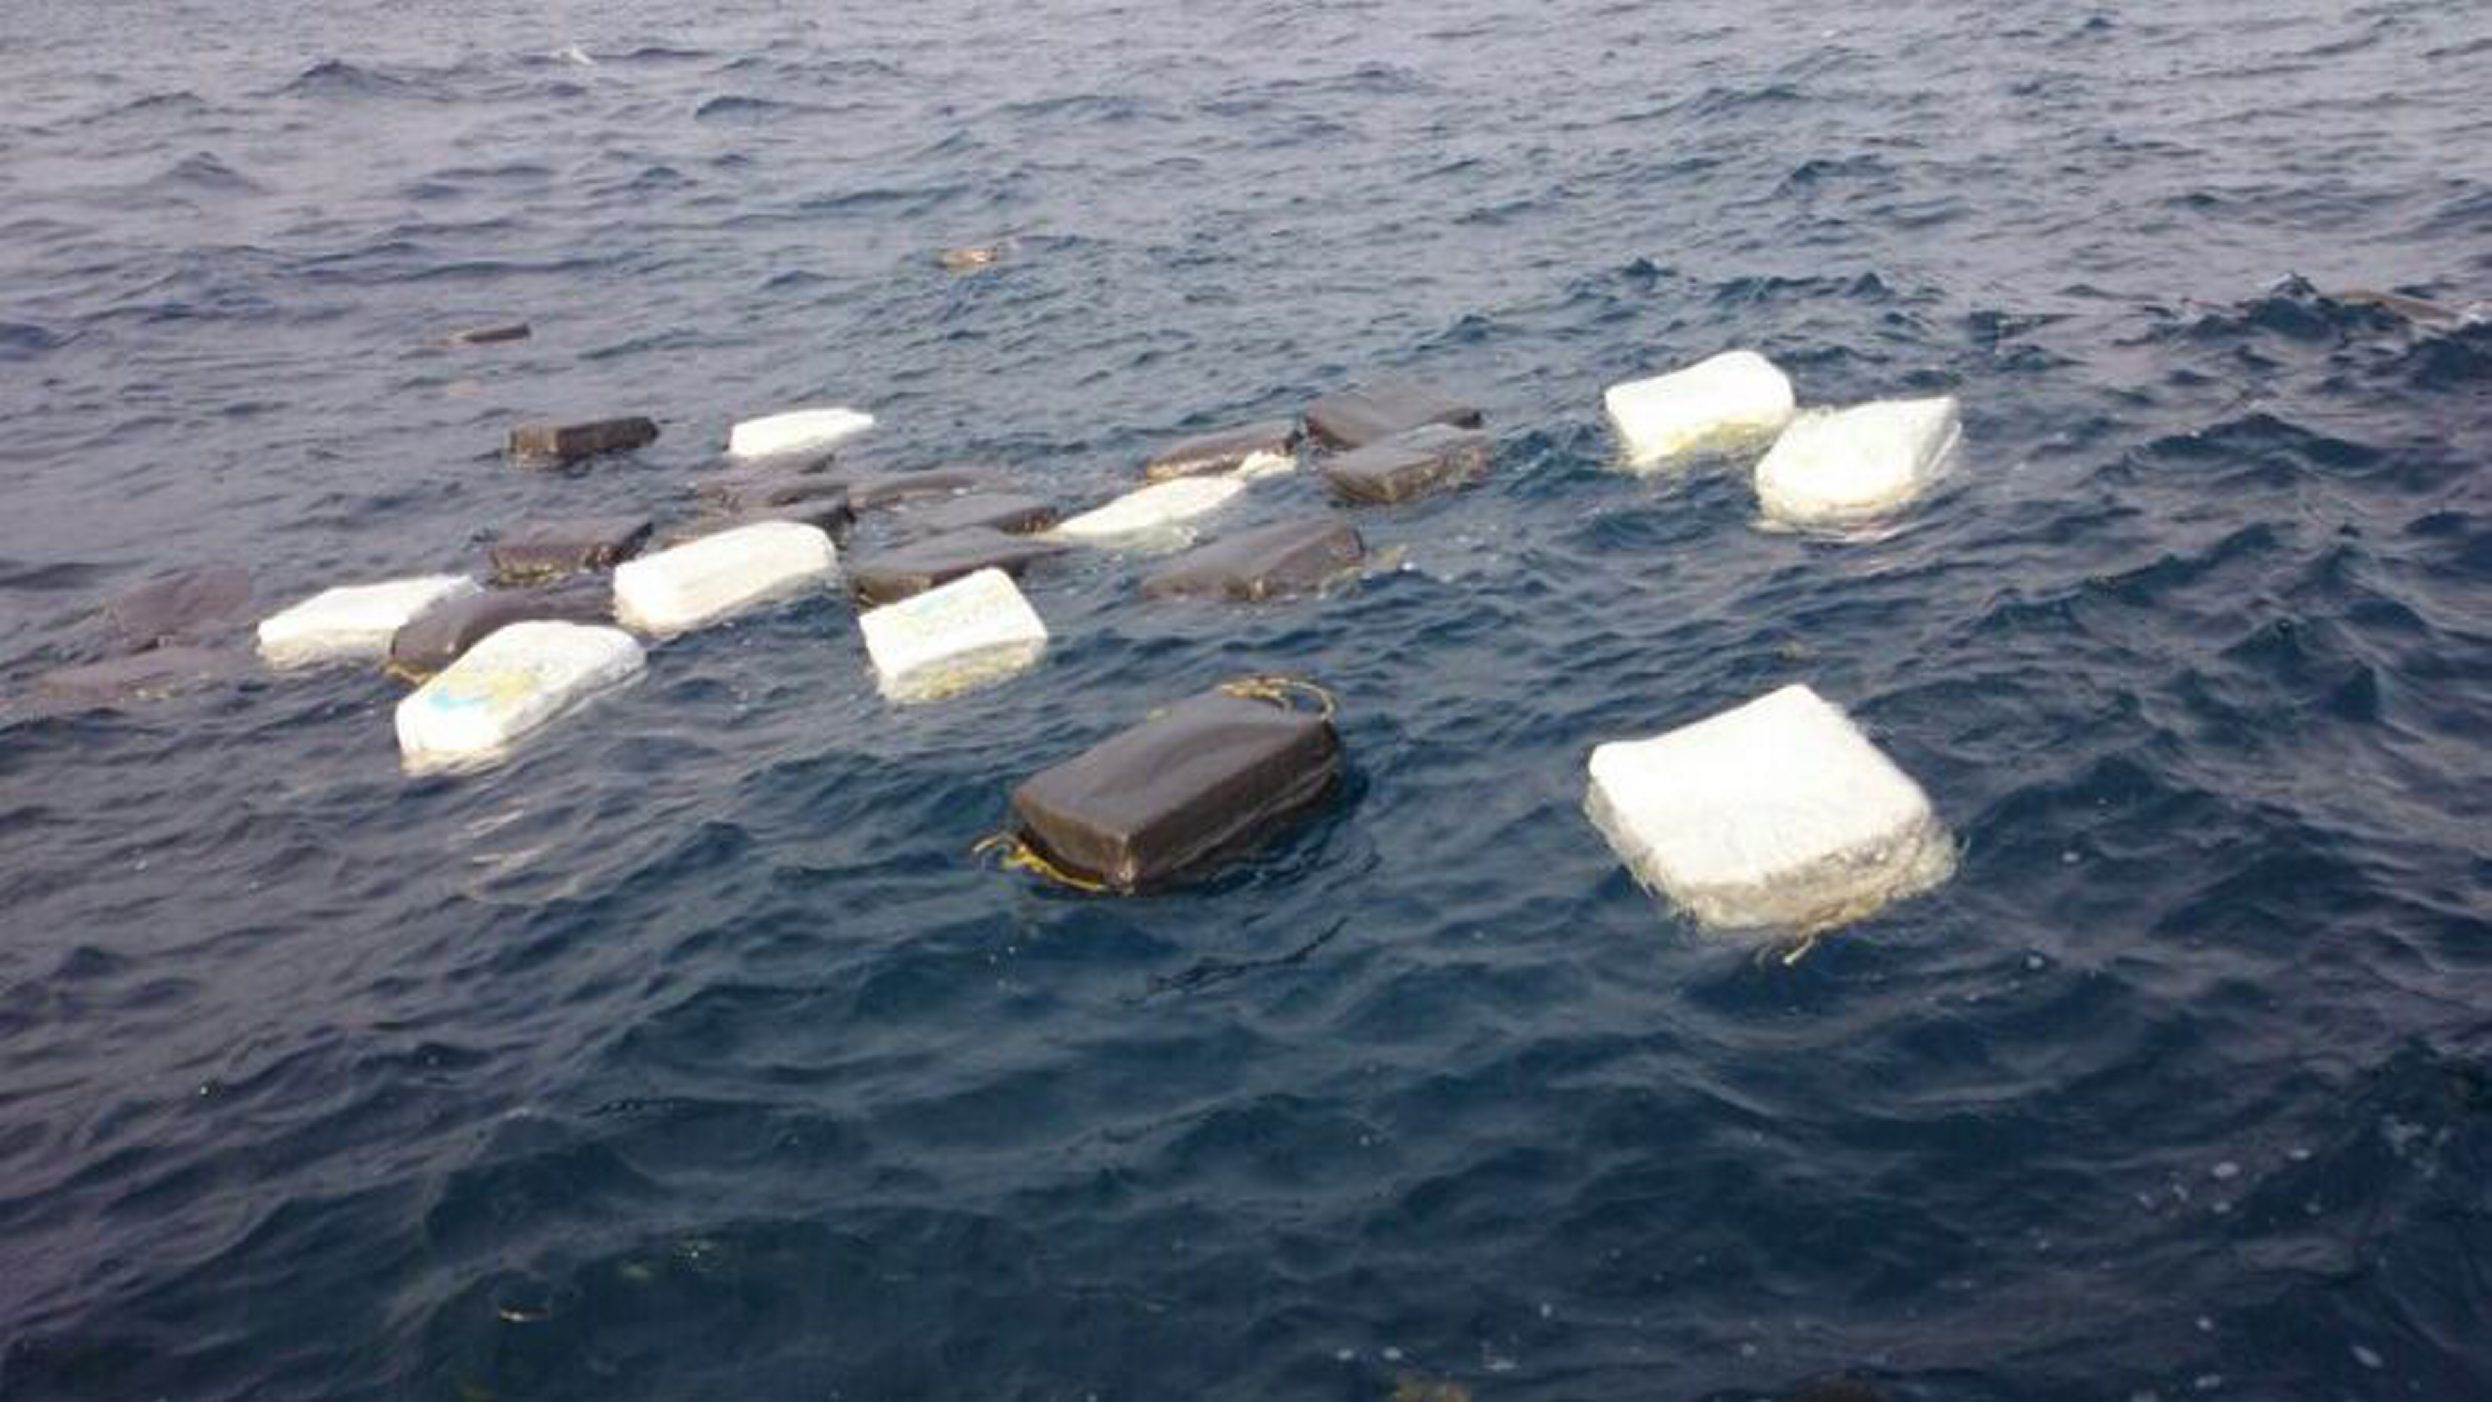 Aparecen 900 kilos de cocaína flotando en el mar de Costa Rica